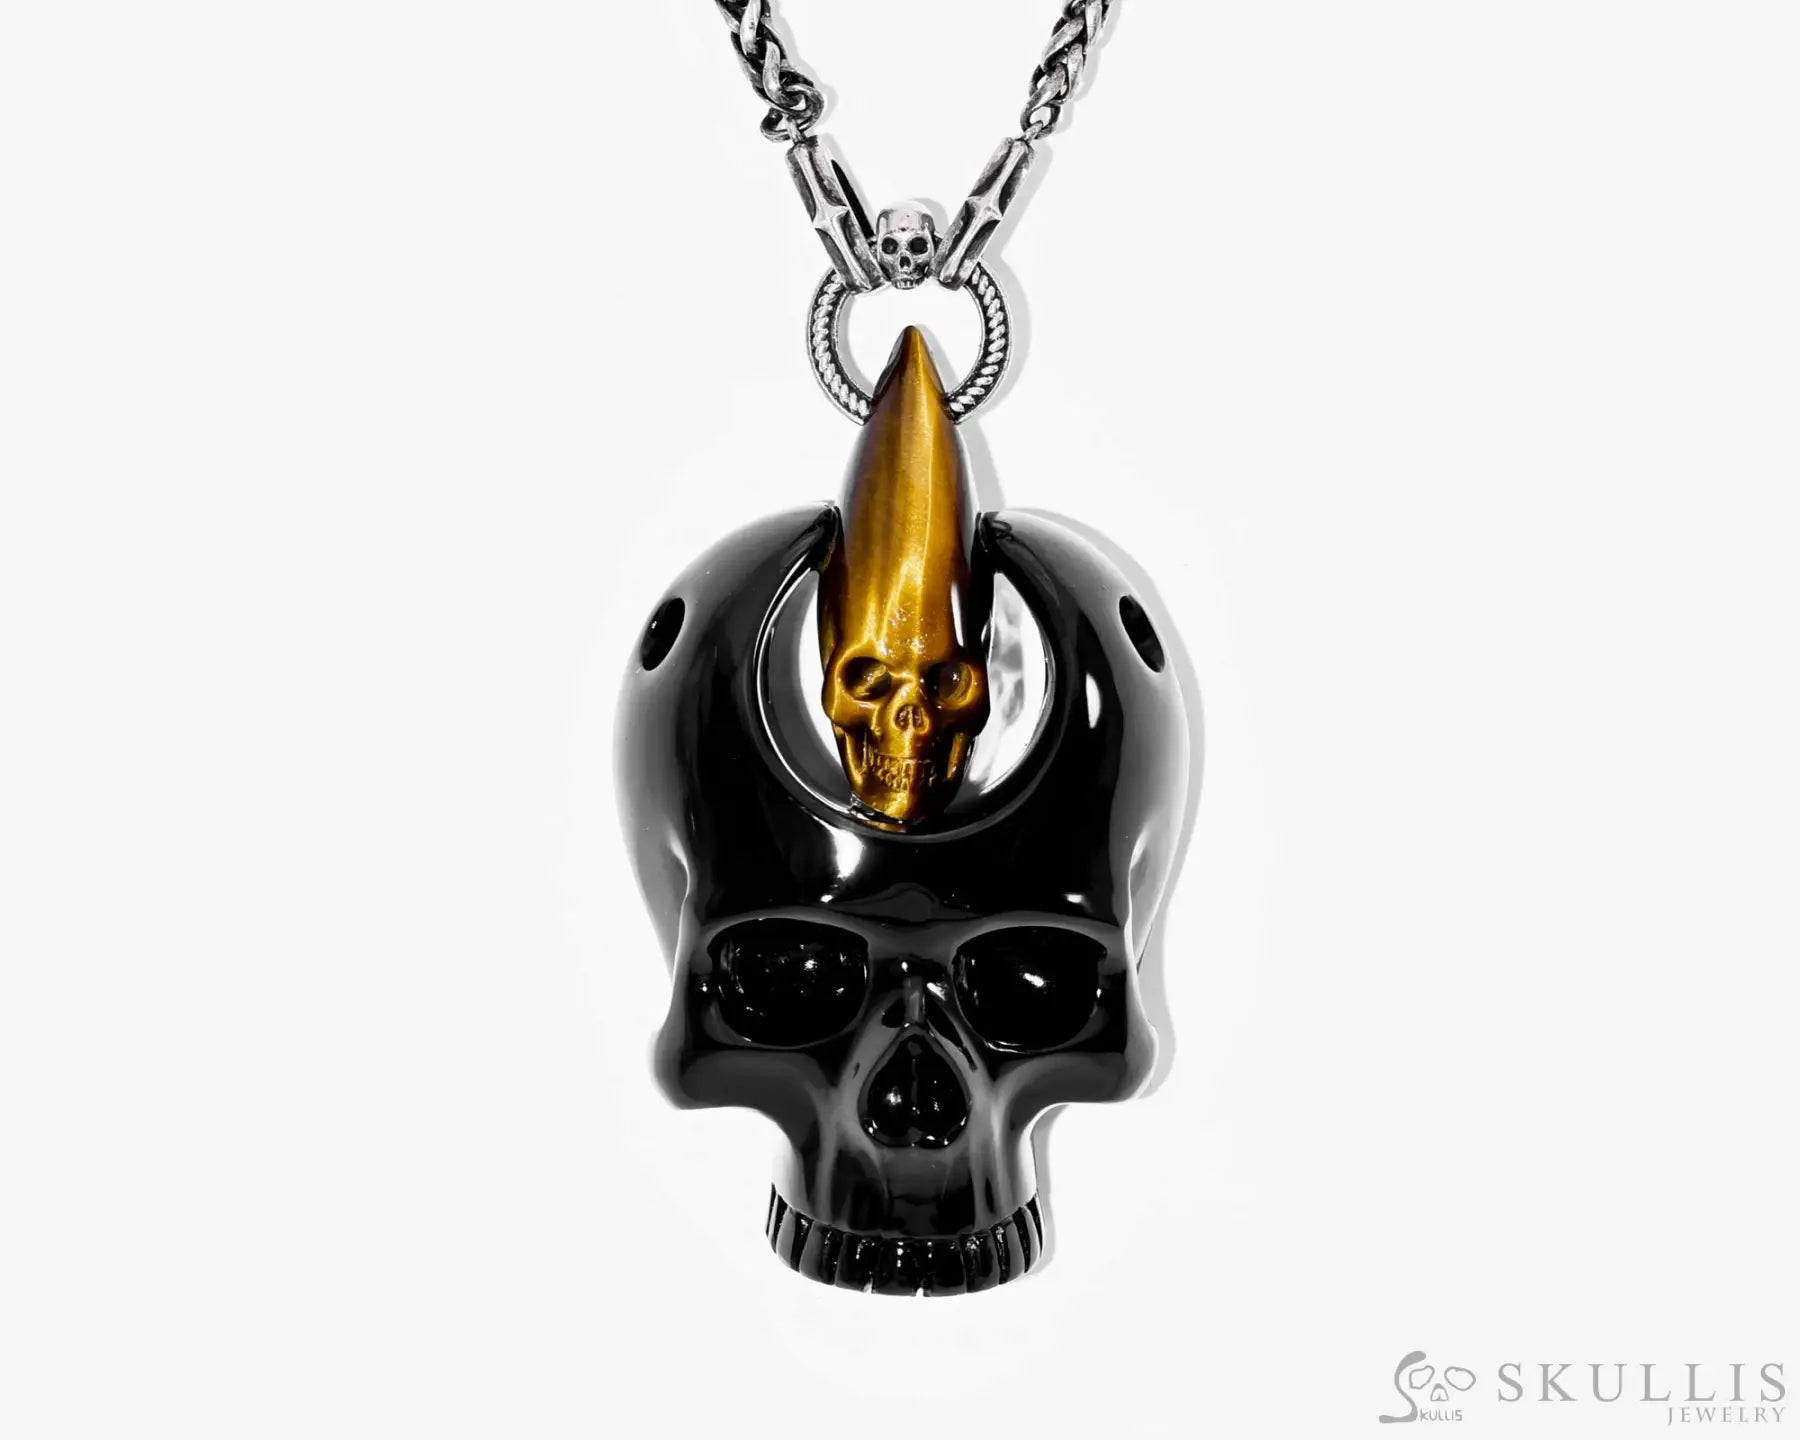 Gem Skull Pendant Necklace Of Black Obsidian & Gold Tiger Eye Carved Pendants